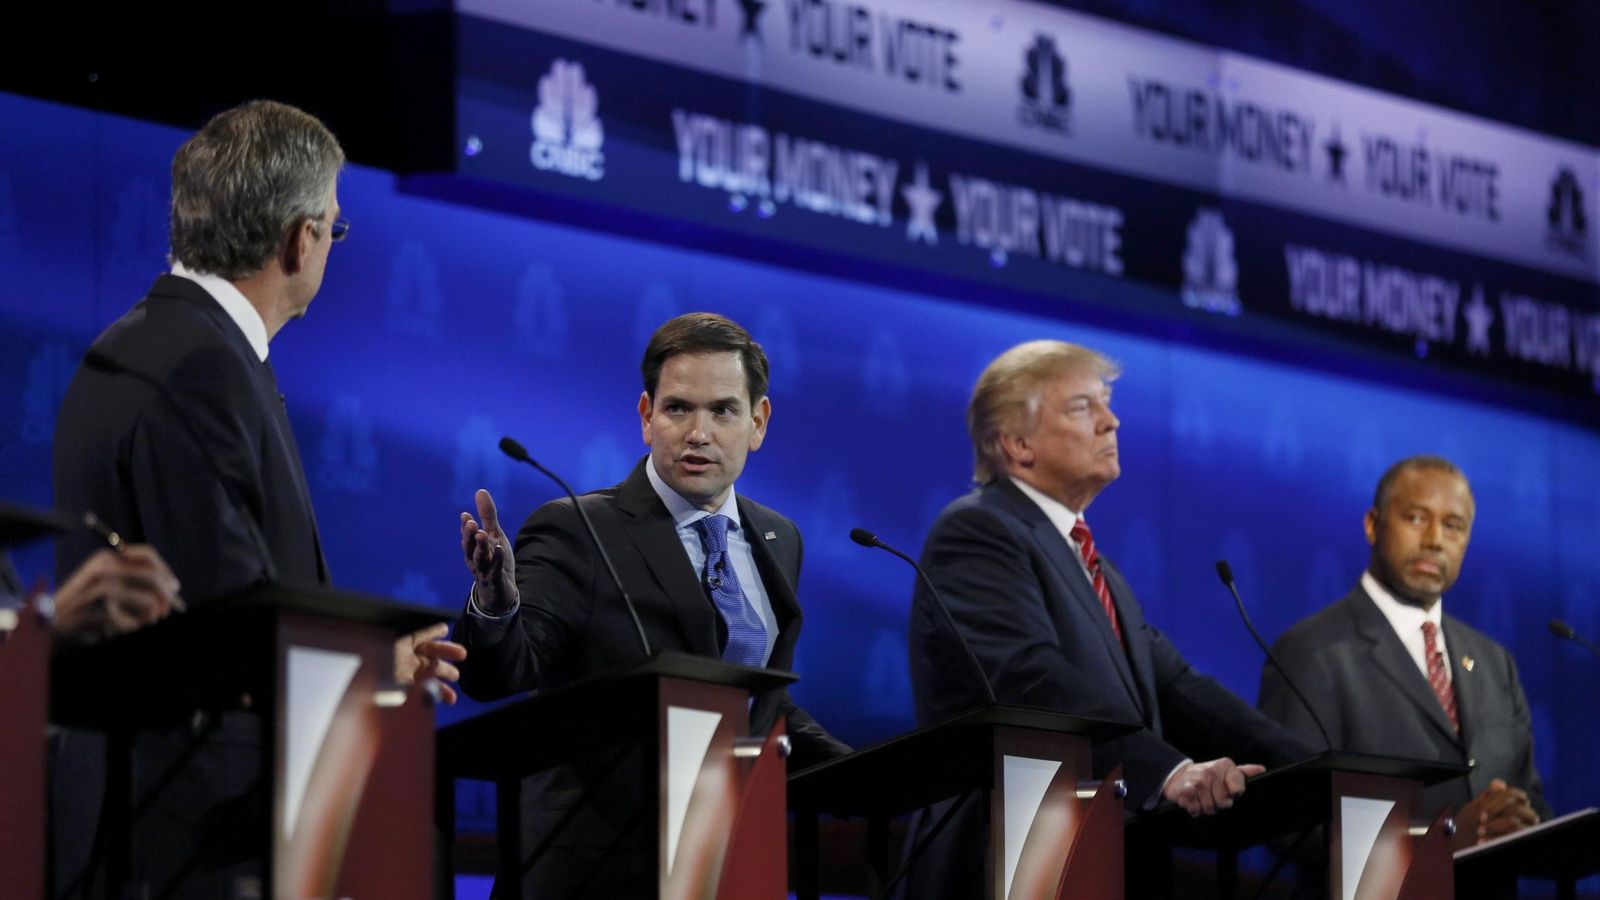 Foto: El senador Marco Rubio interviene en el debate de la CNBC ante la mirada de los también candidatos republicanos Jeb Bush, Donald Trump y Ben Carson. (Reuters)